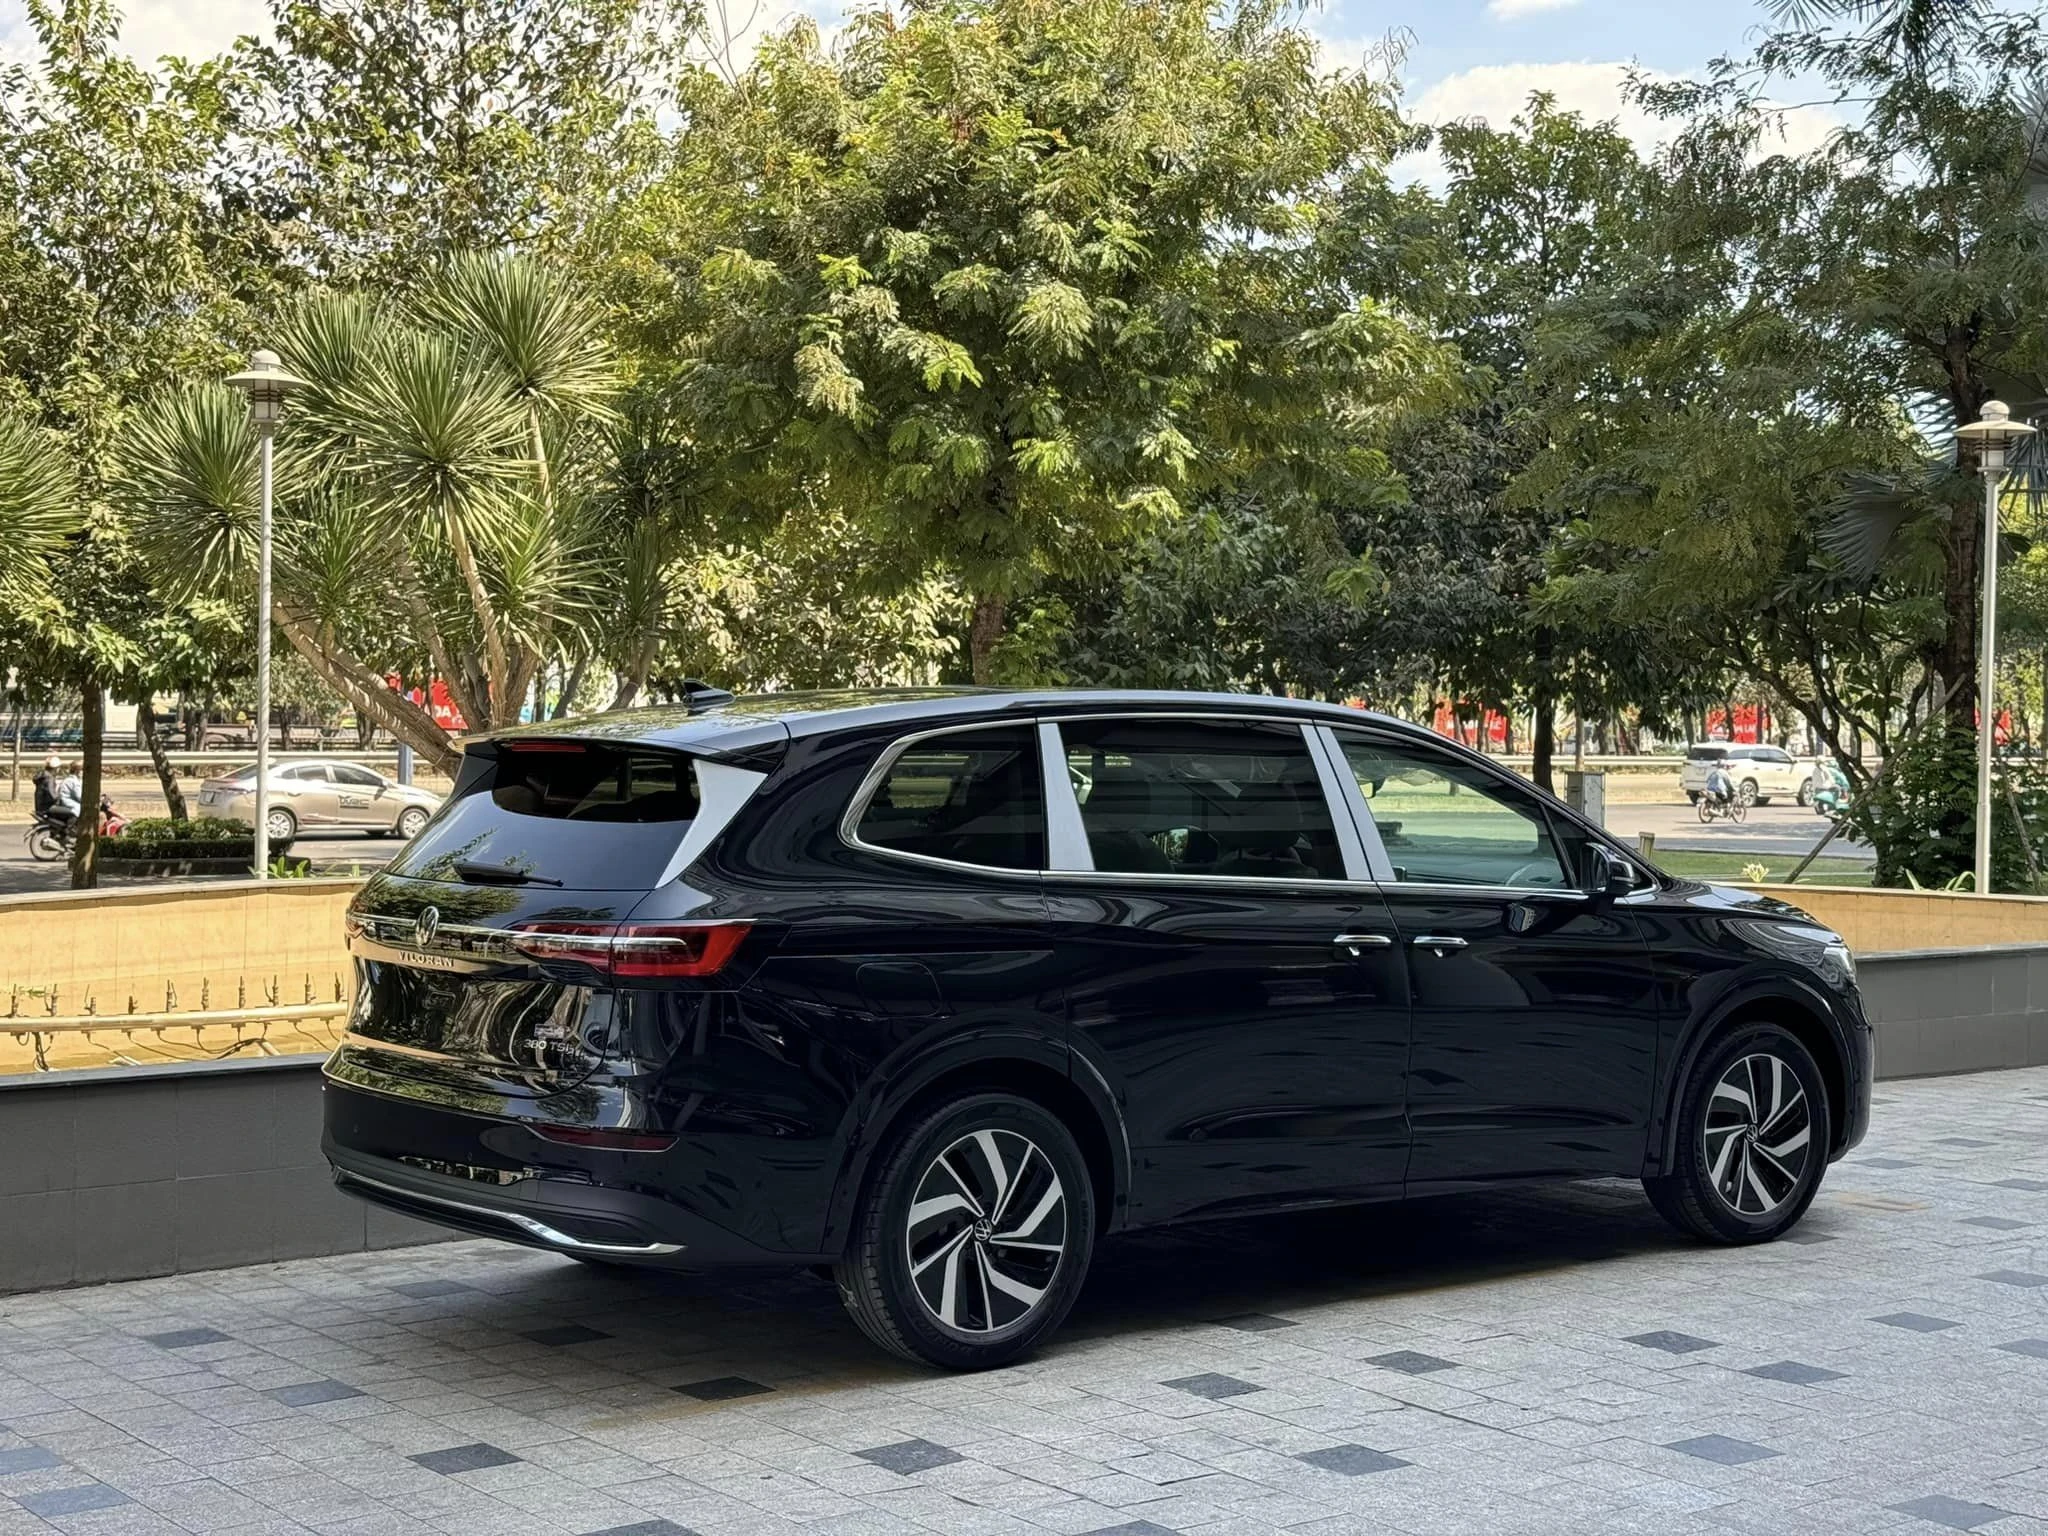 Nhập từ Trung Quốc, Volkswagen Viloran thành 'hiện tượng' tại Việt Nam